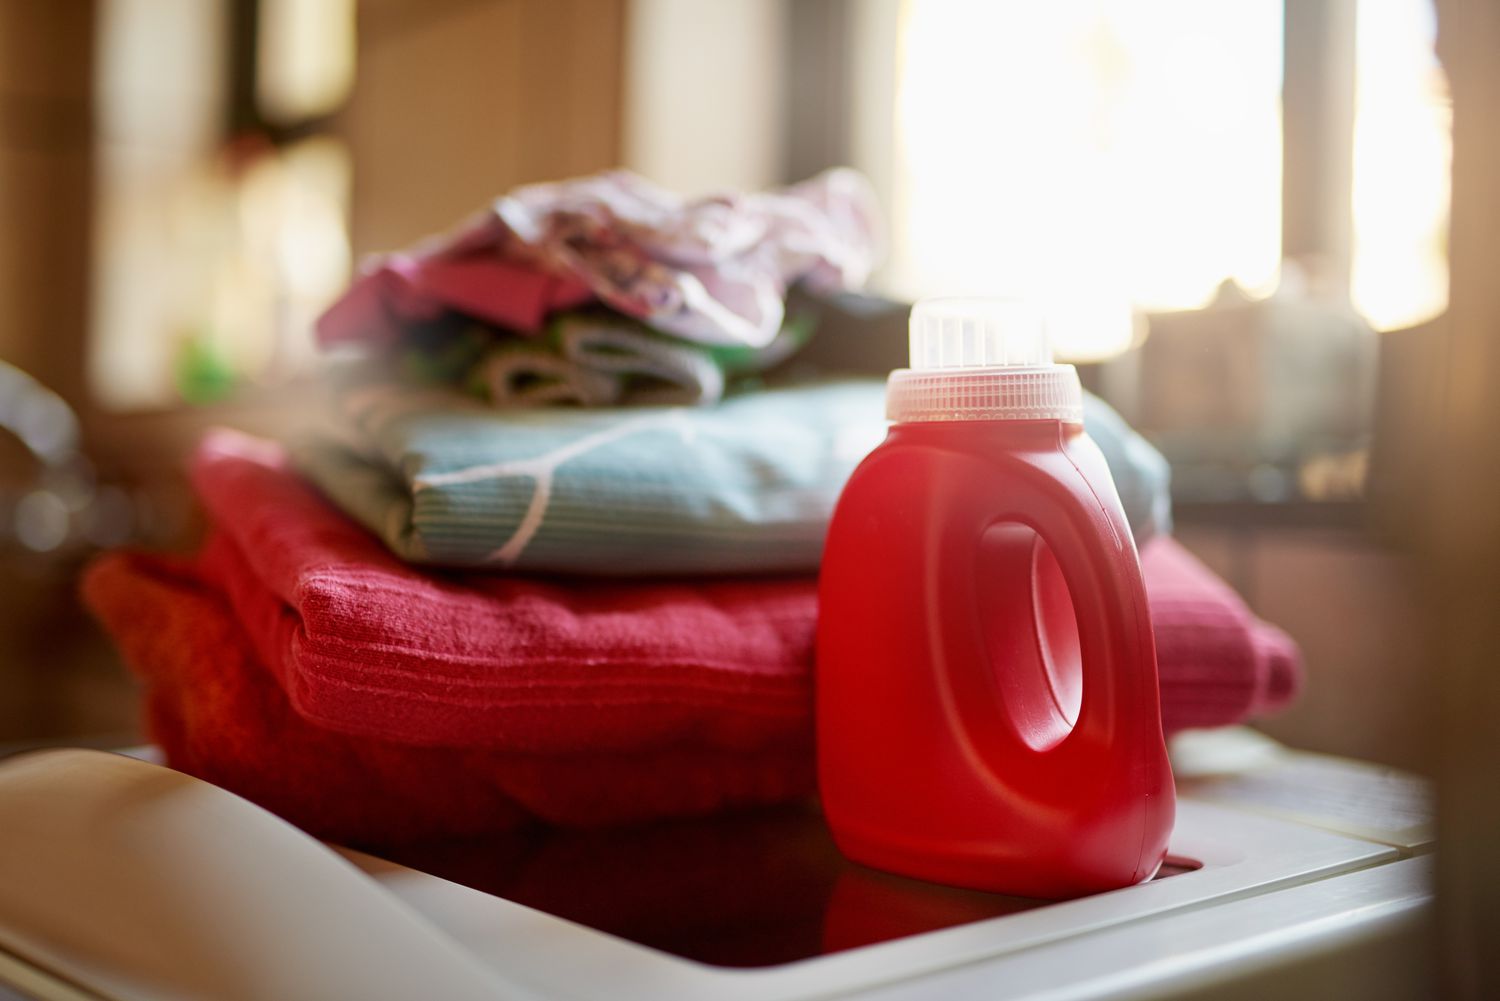 24 kreative Ideen zur Wiederverwendung von Waschmittelflaschen